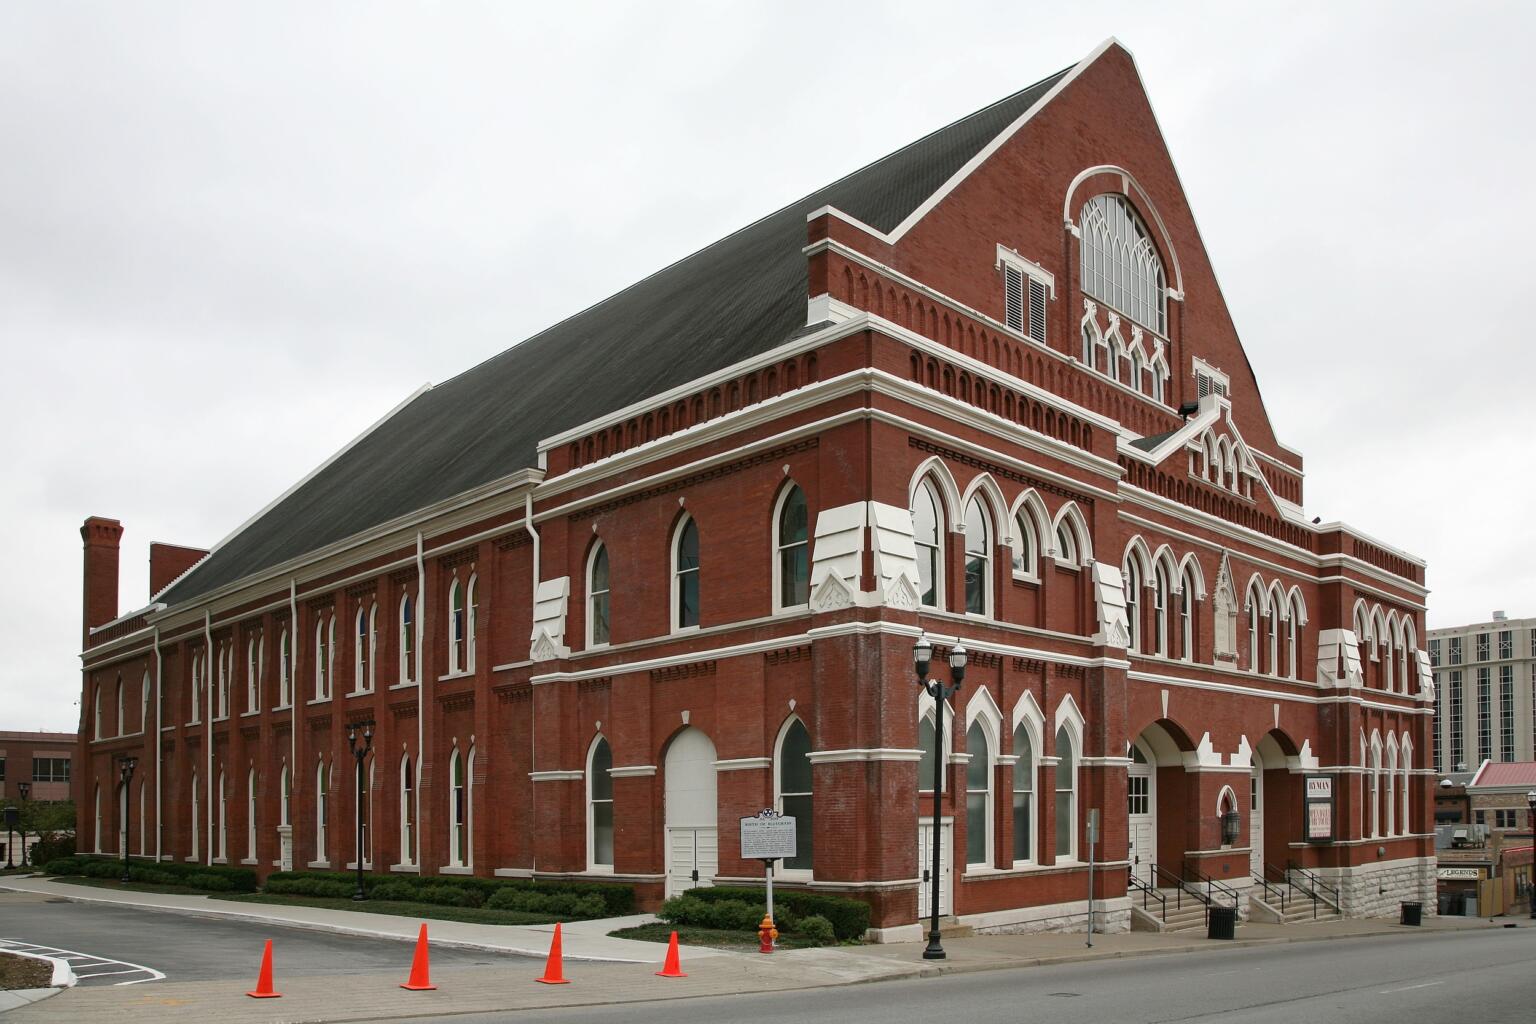 The Ryman Auditorium